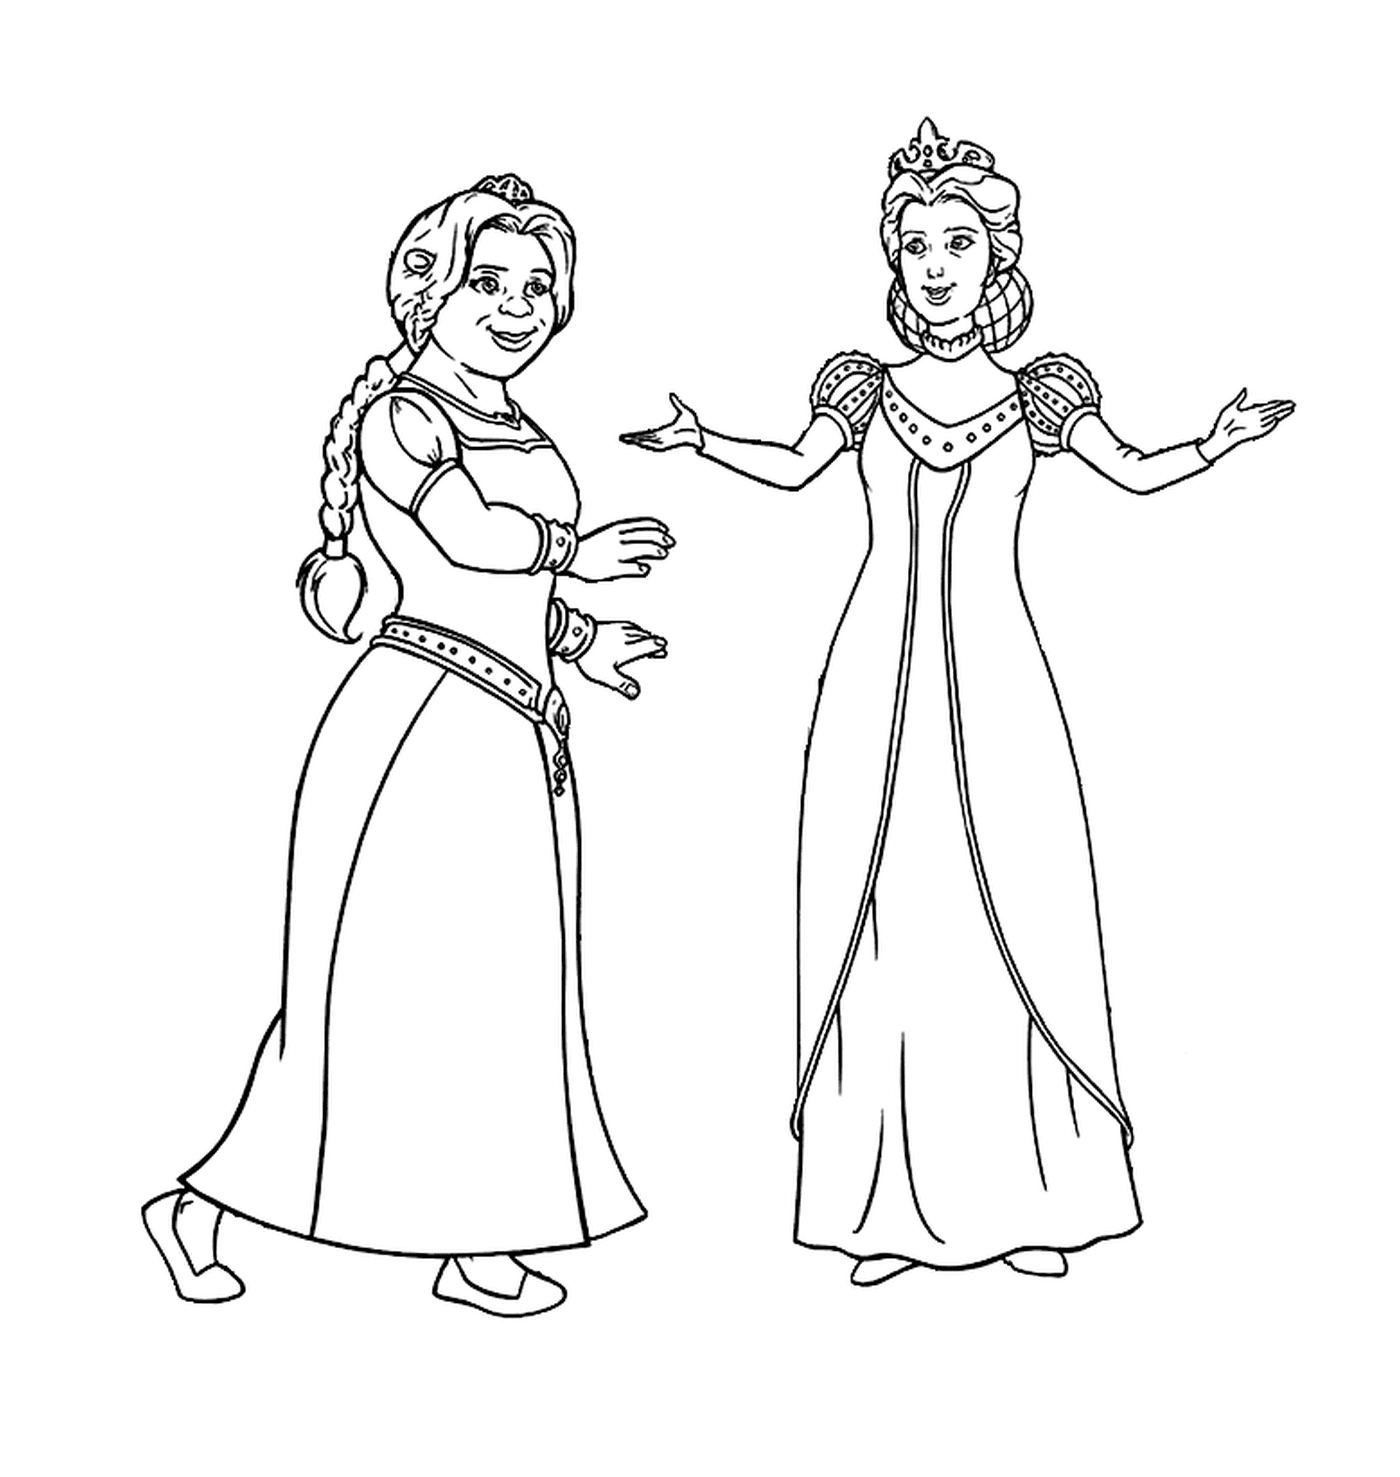  A princesa Fiona e sua mãe 